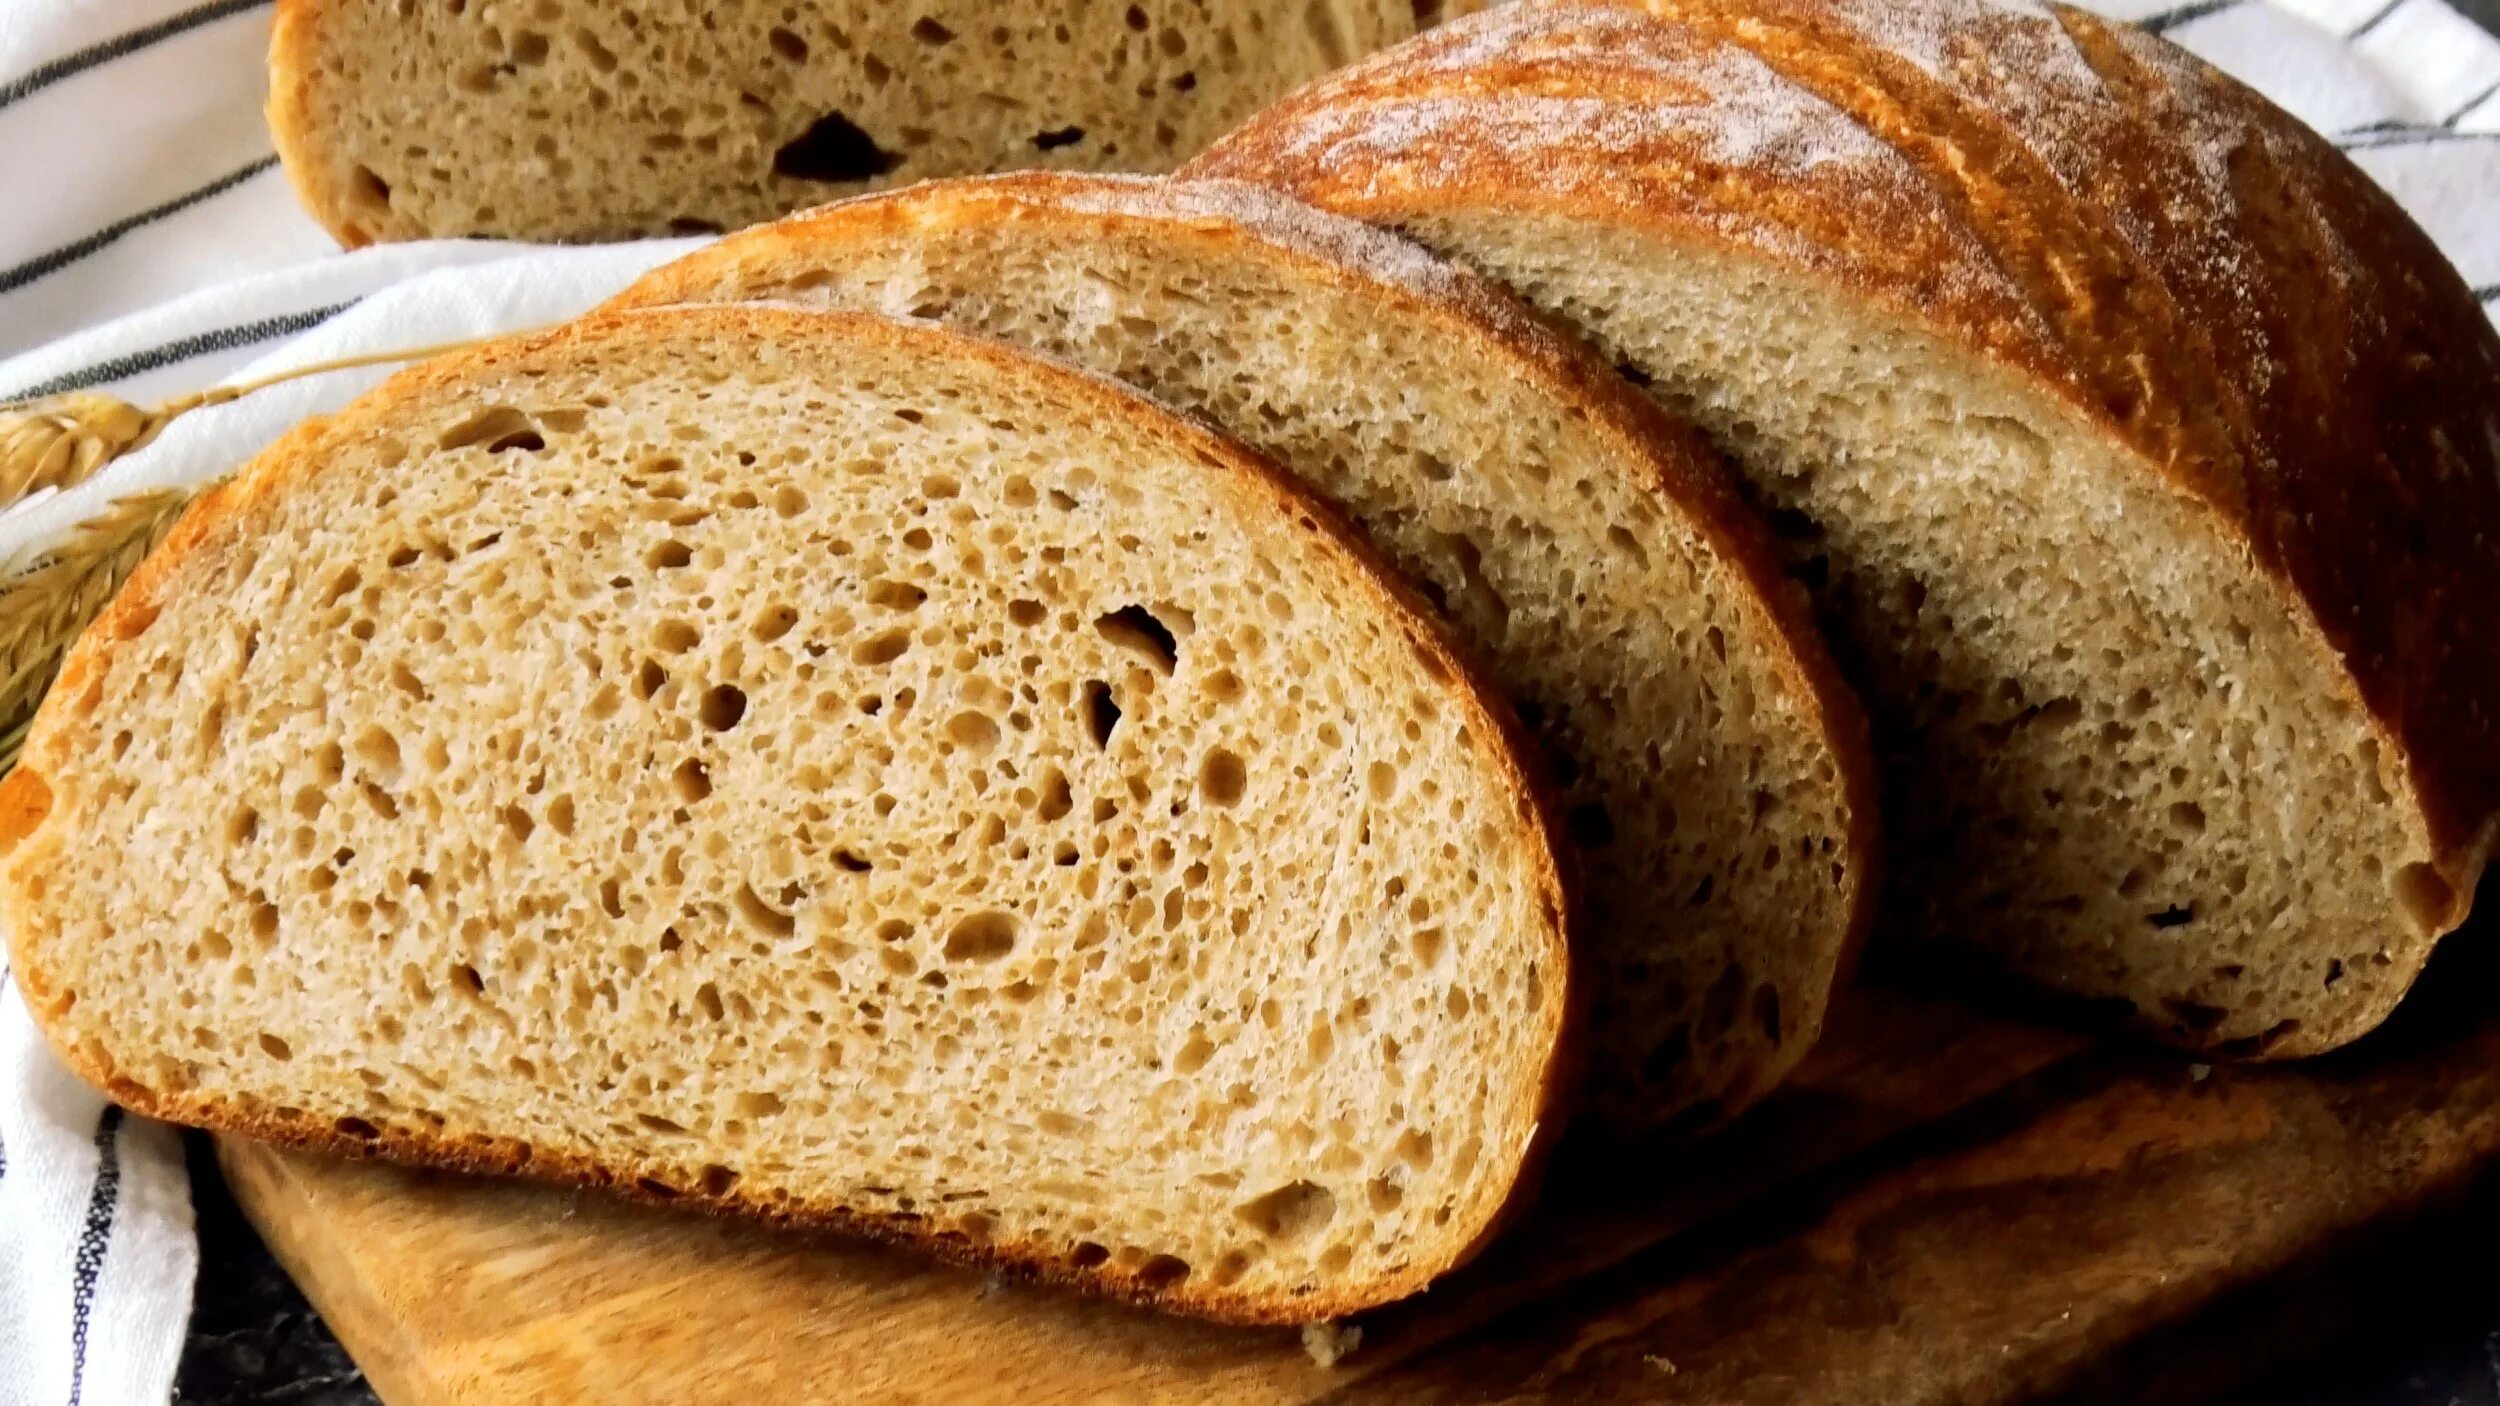 Пшеничный цельнозерновой хлеб на закваске. Ржано-пшеничный хлеб на закваске. Хлеб пшеничный цельнозерновой. Хлеб Богатырский цельнозерновой. Ржано-пшеничный цельнозерновой хлеб.